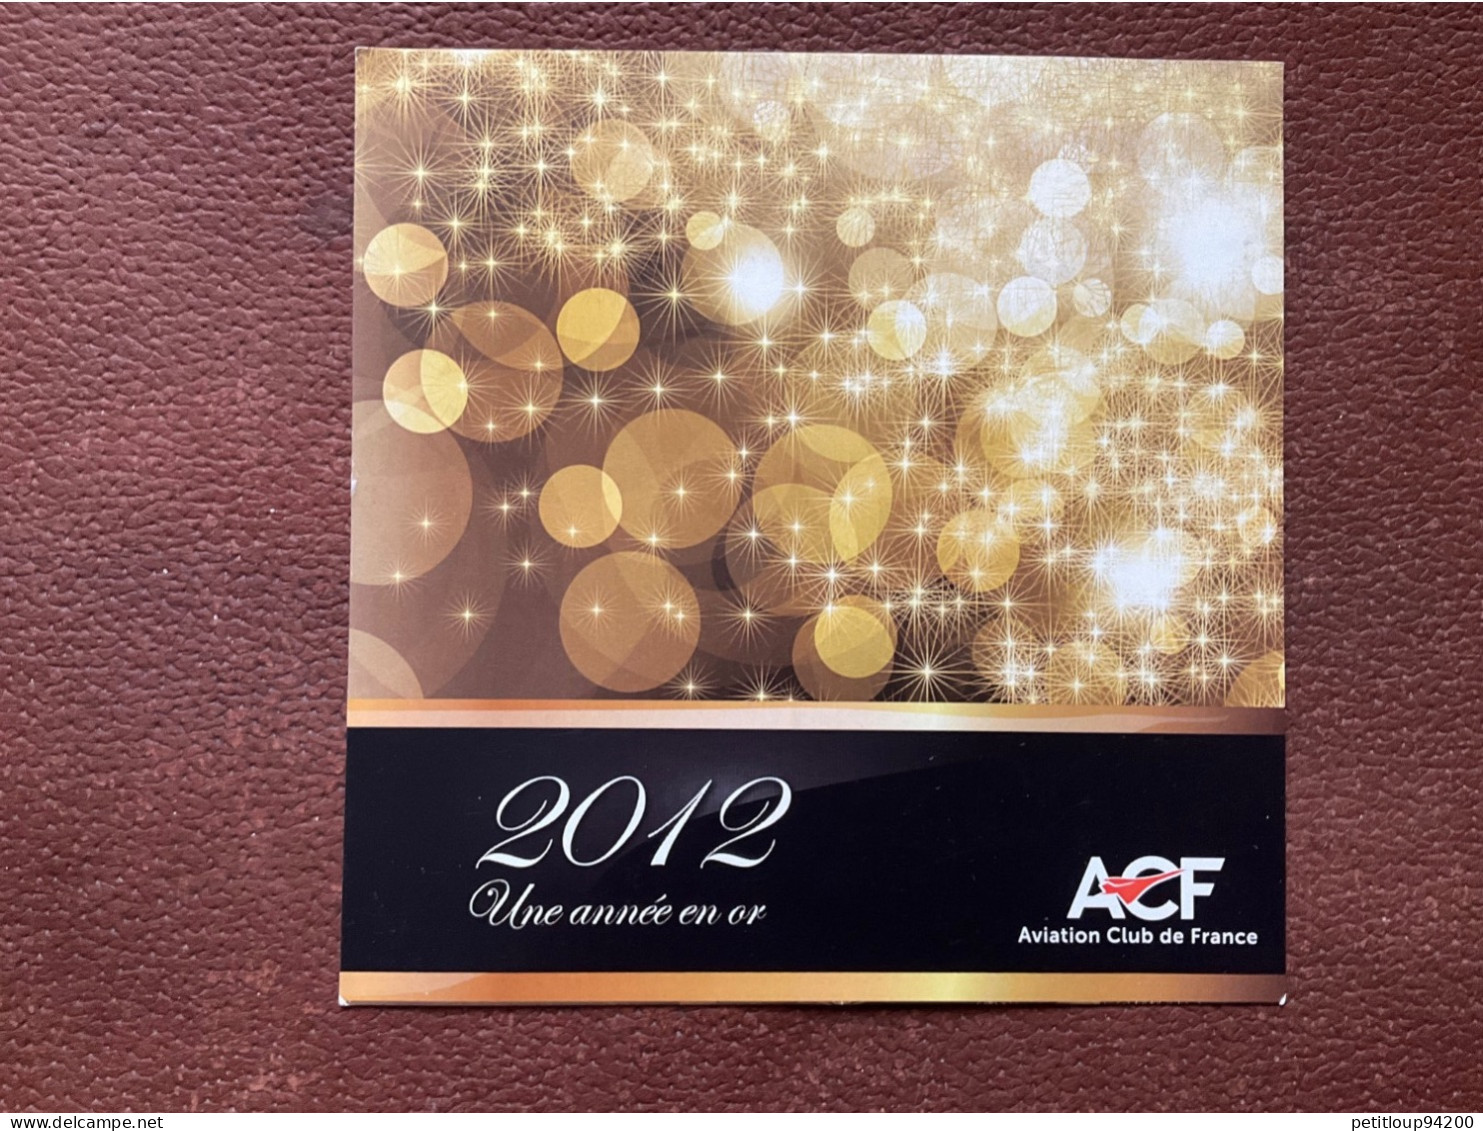 ACF Aviation Club De France UNE ANNÉE EN OR 2012 - Nouvel An